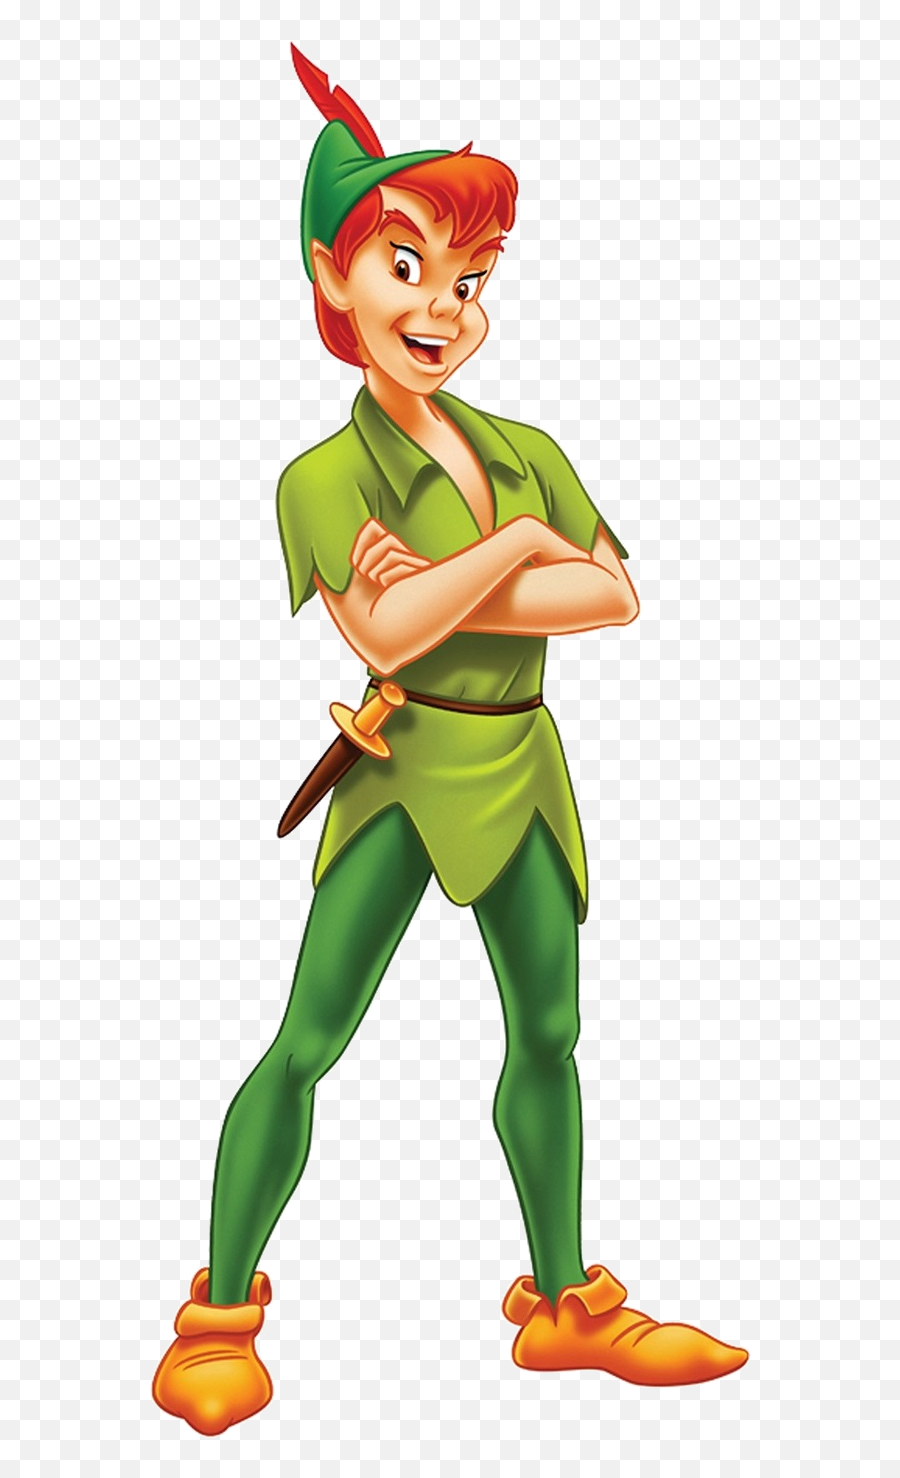 Peter - Peter Pan Emoji,Peter Pan Disney Emoji